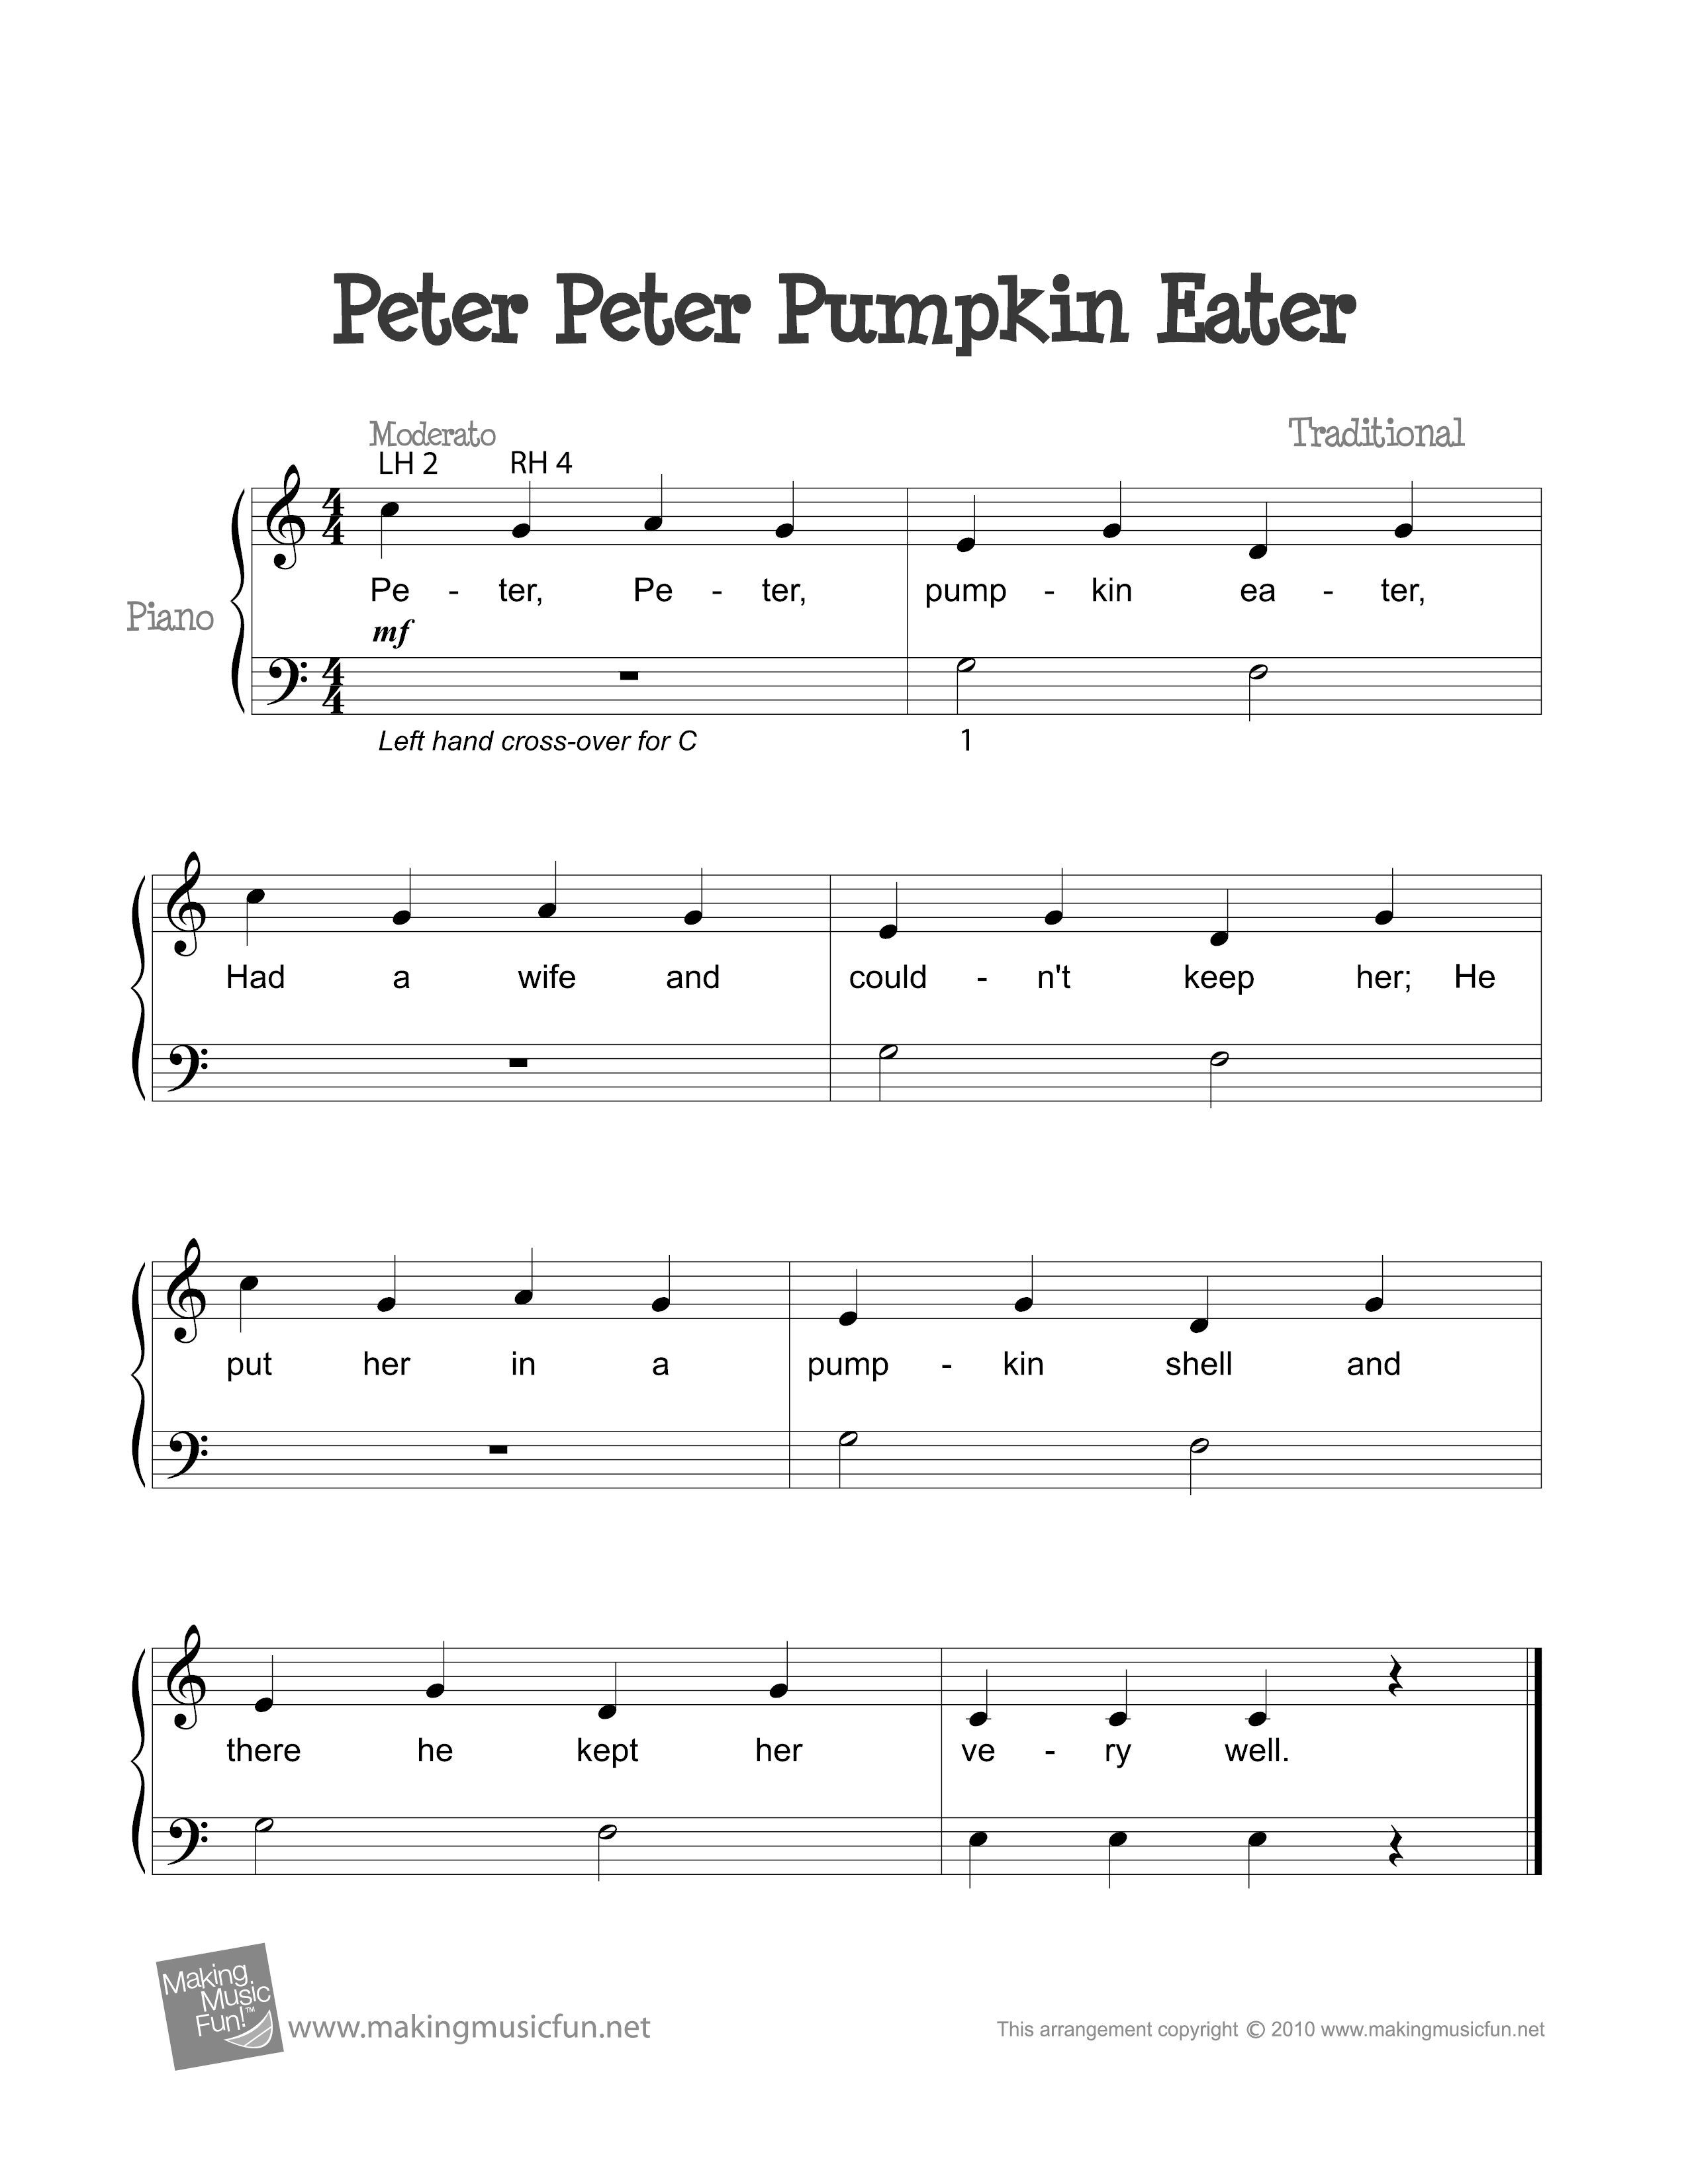 Peter, Peter Pumpkin Eaterピアノ譜